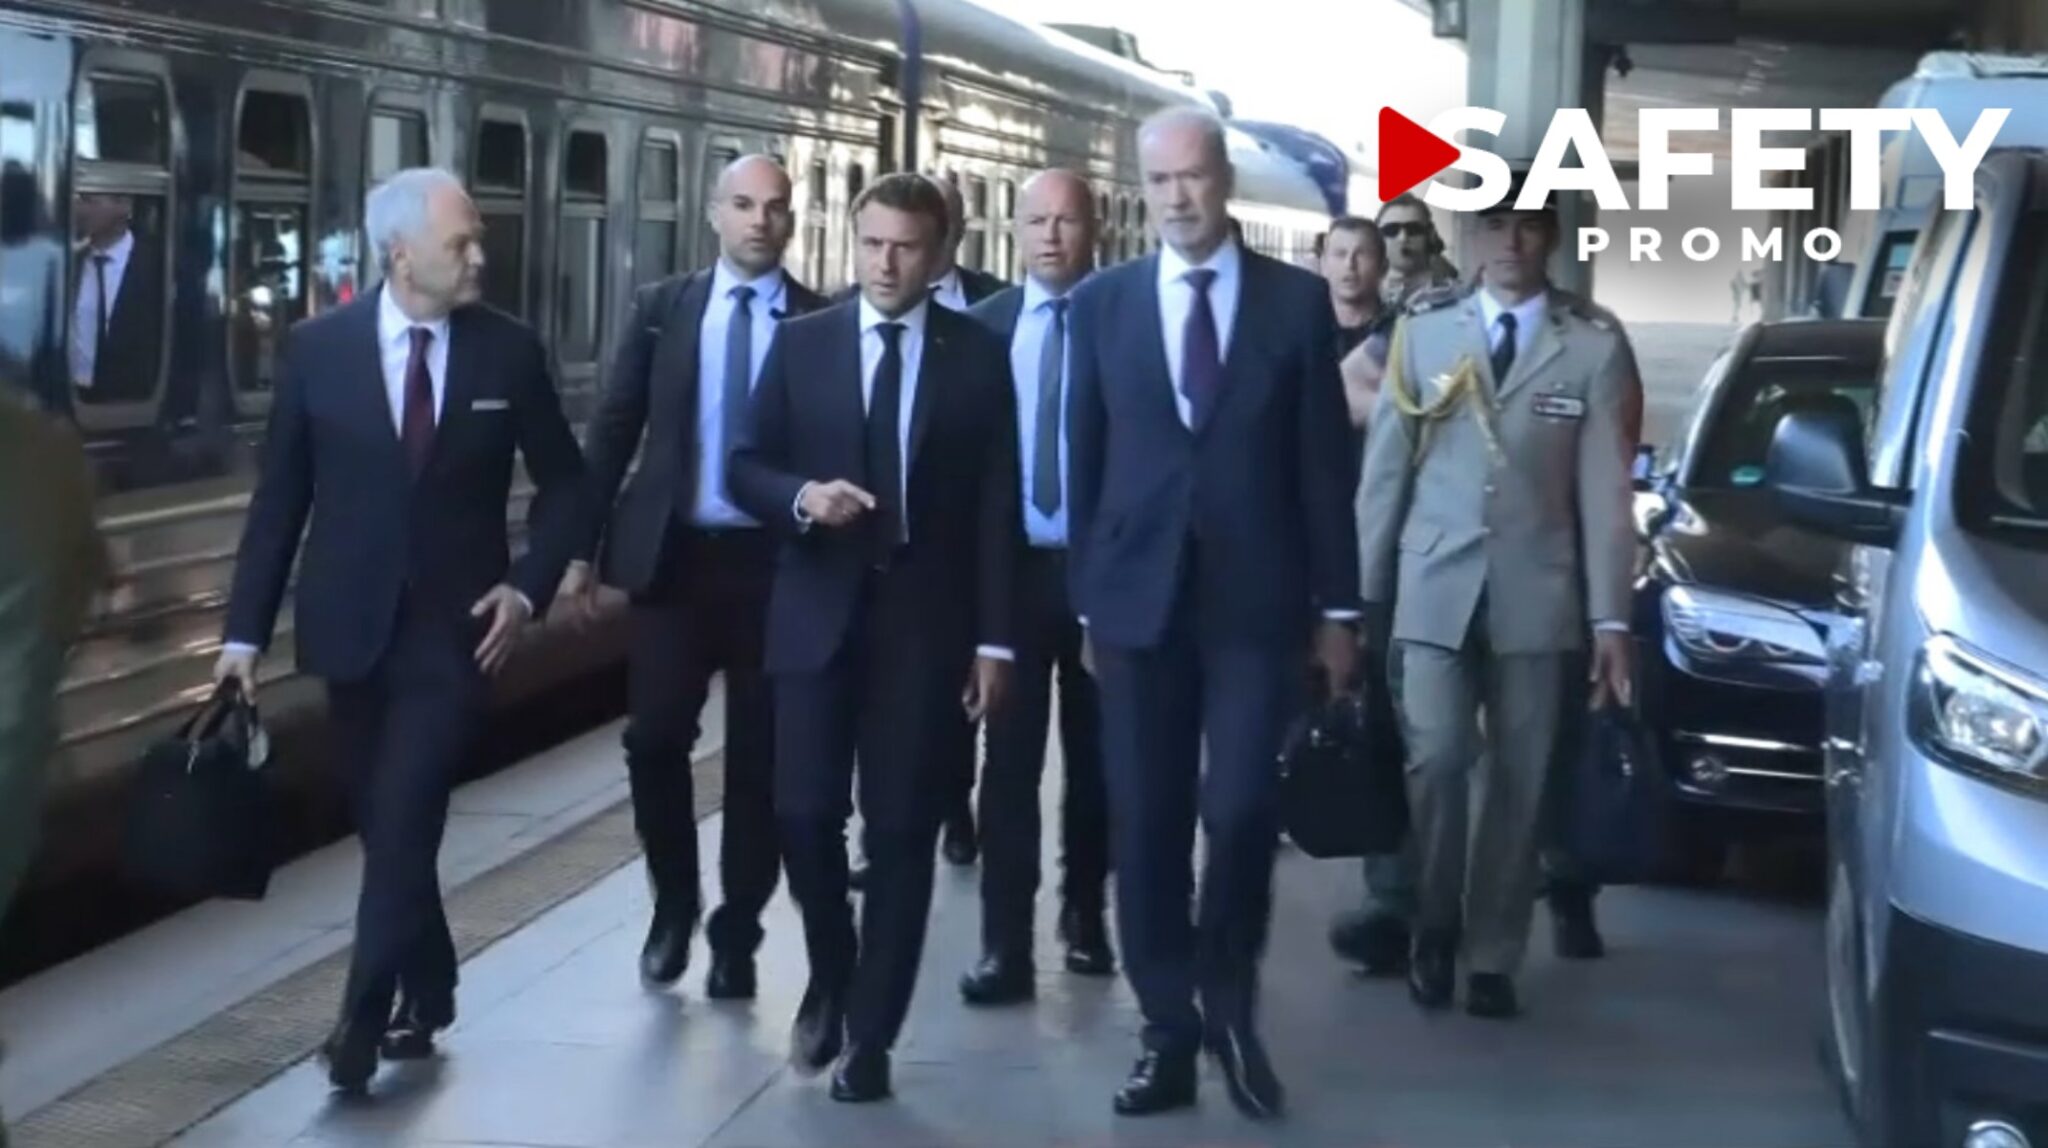 EN DIRECT - Emmanuel Macron est arrivé en gare de Kiev